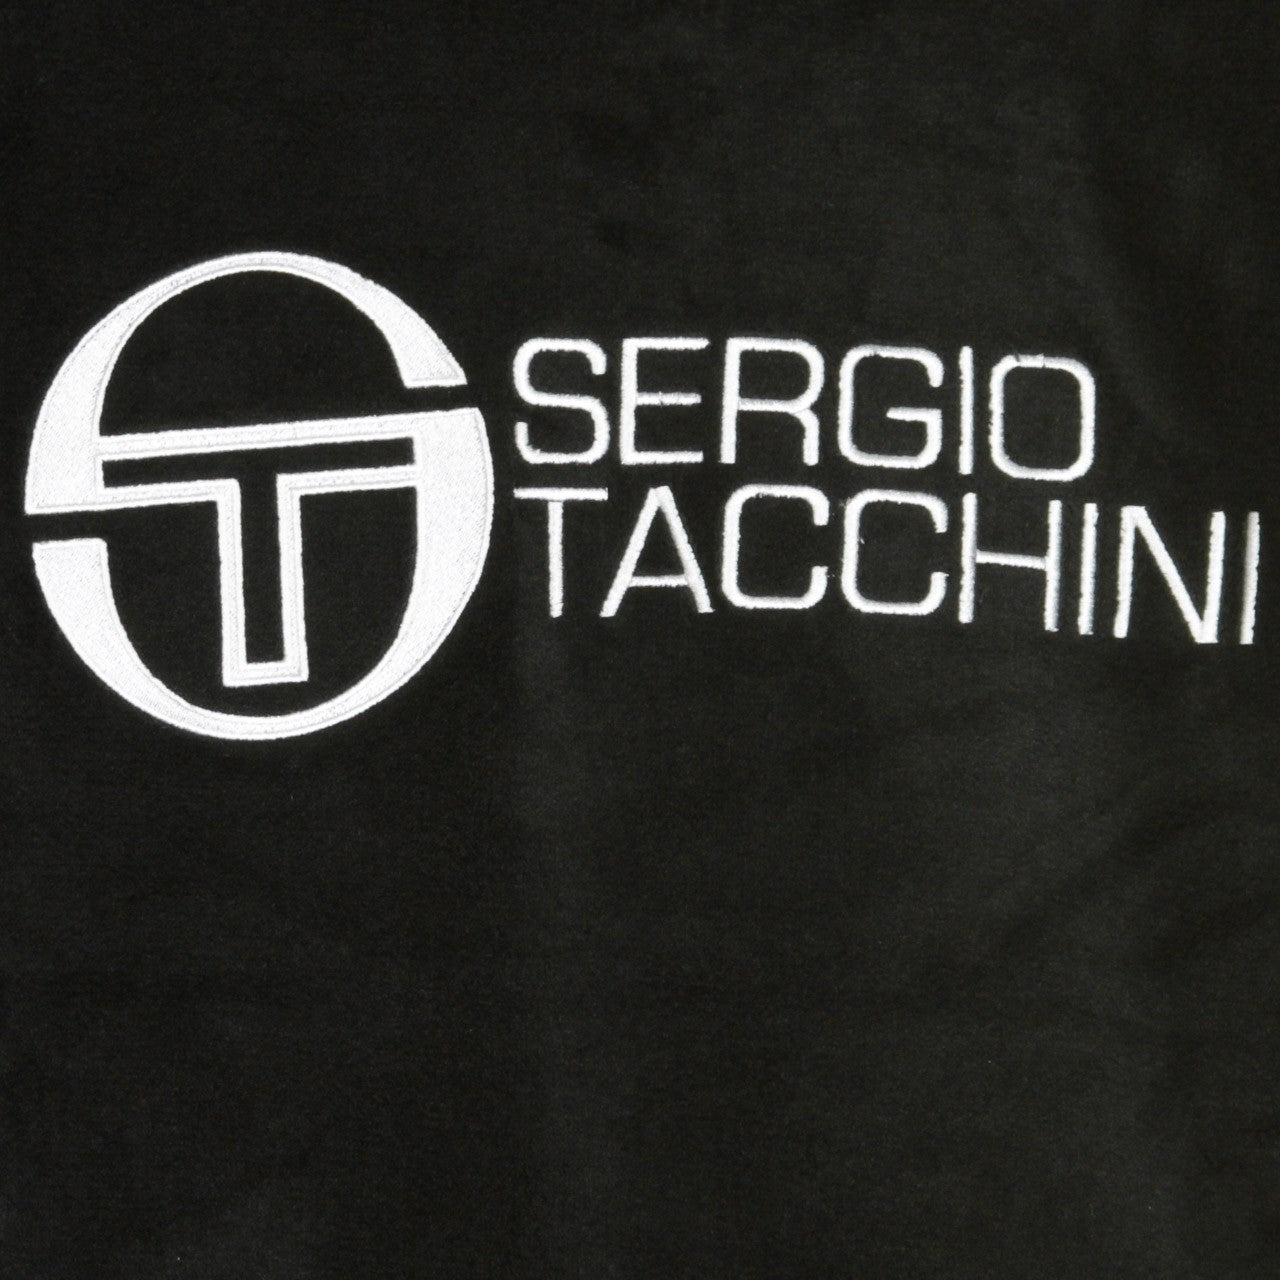 Sergio Tacchini, Felpa Cappuccio Uomo Dundee Sweater, 